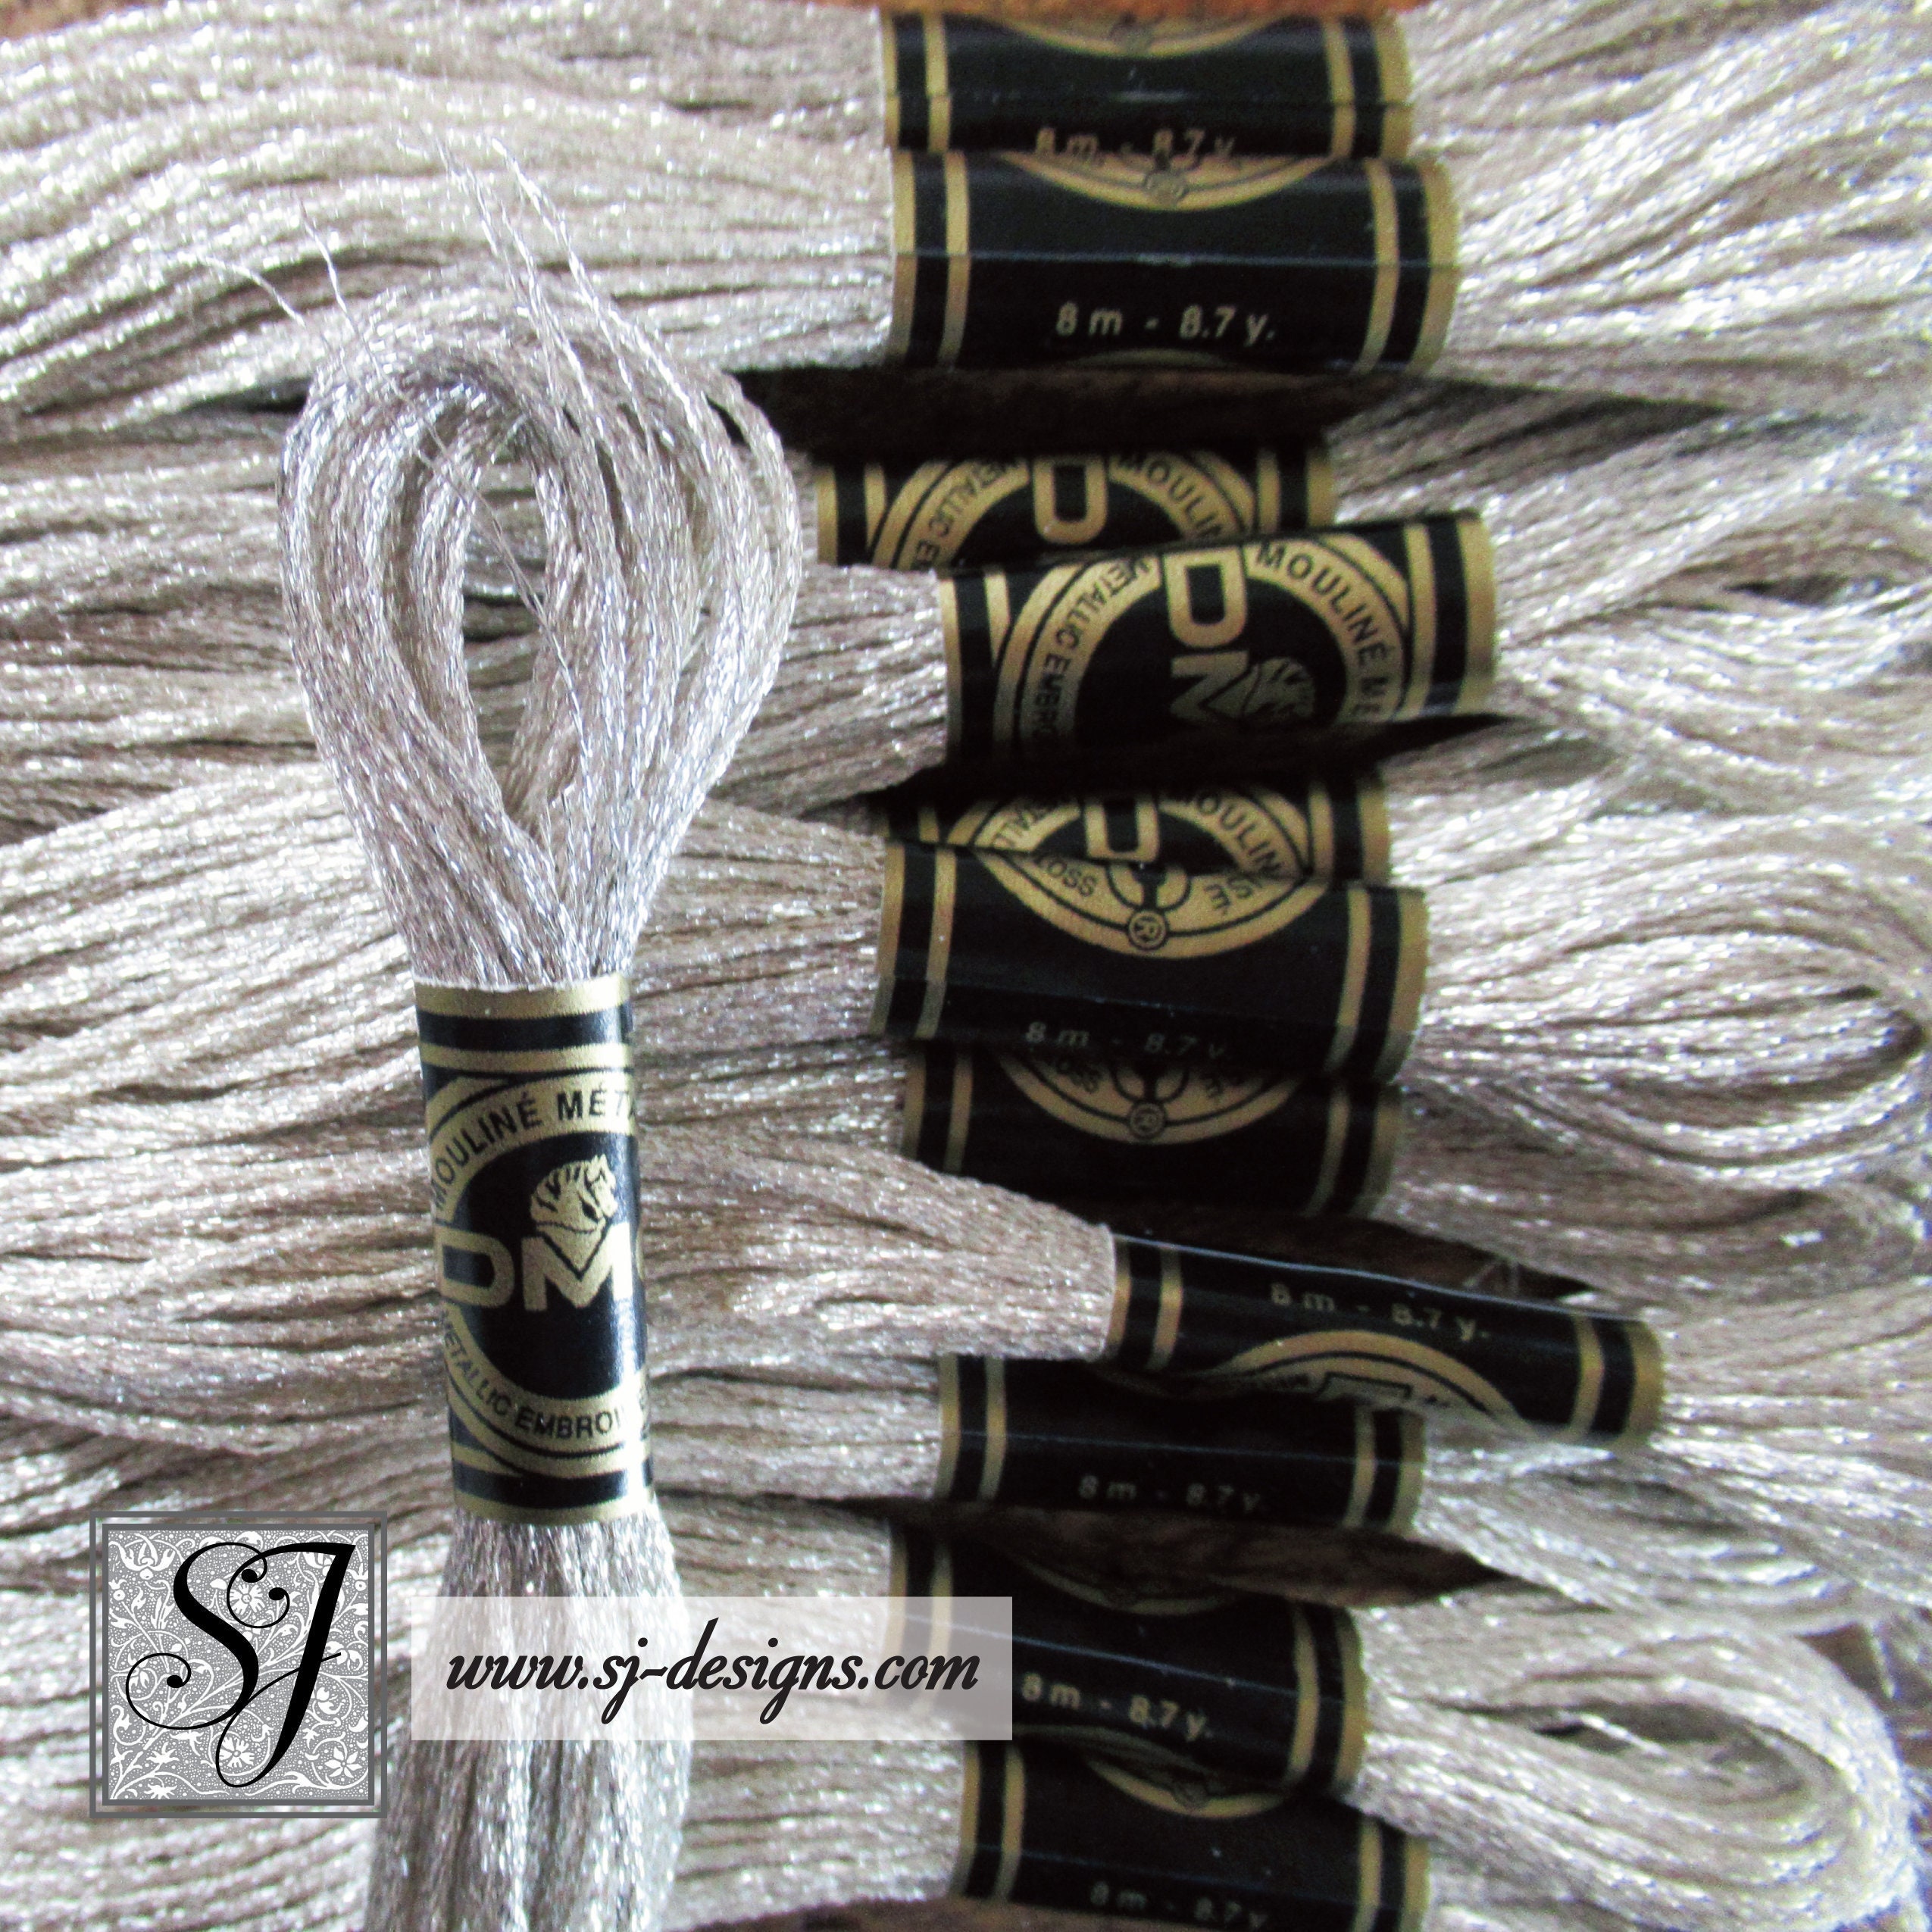 Metallic Embroidery Floss, Thread, Metallic Cross Stitch Thread, Silver  Floss, Gold Floss, Glitter Floss, Glitter Thread, Floss Metallic 